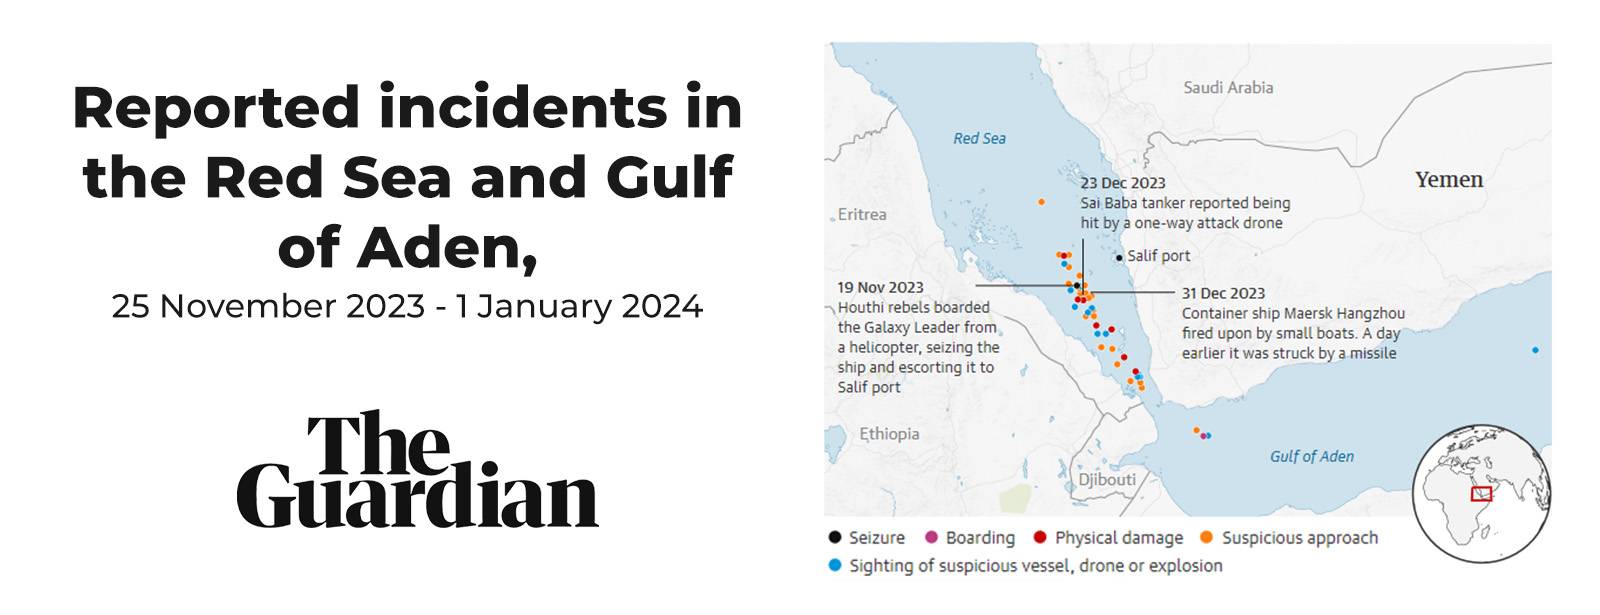 Các sự cố được báo cáo tại Biển Đỏ và Vịnh Aden